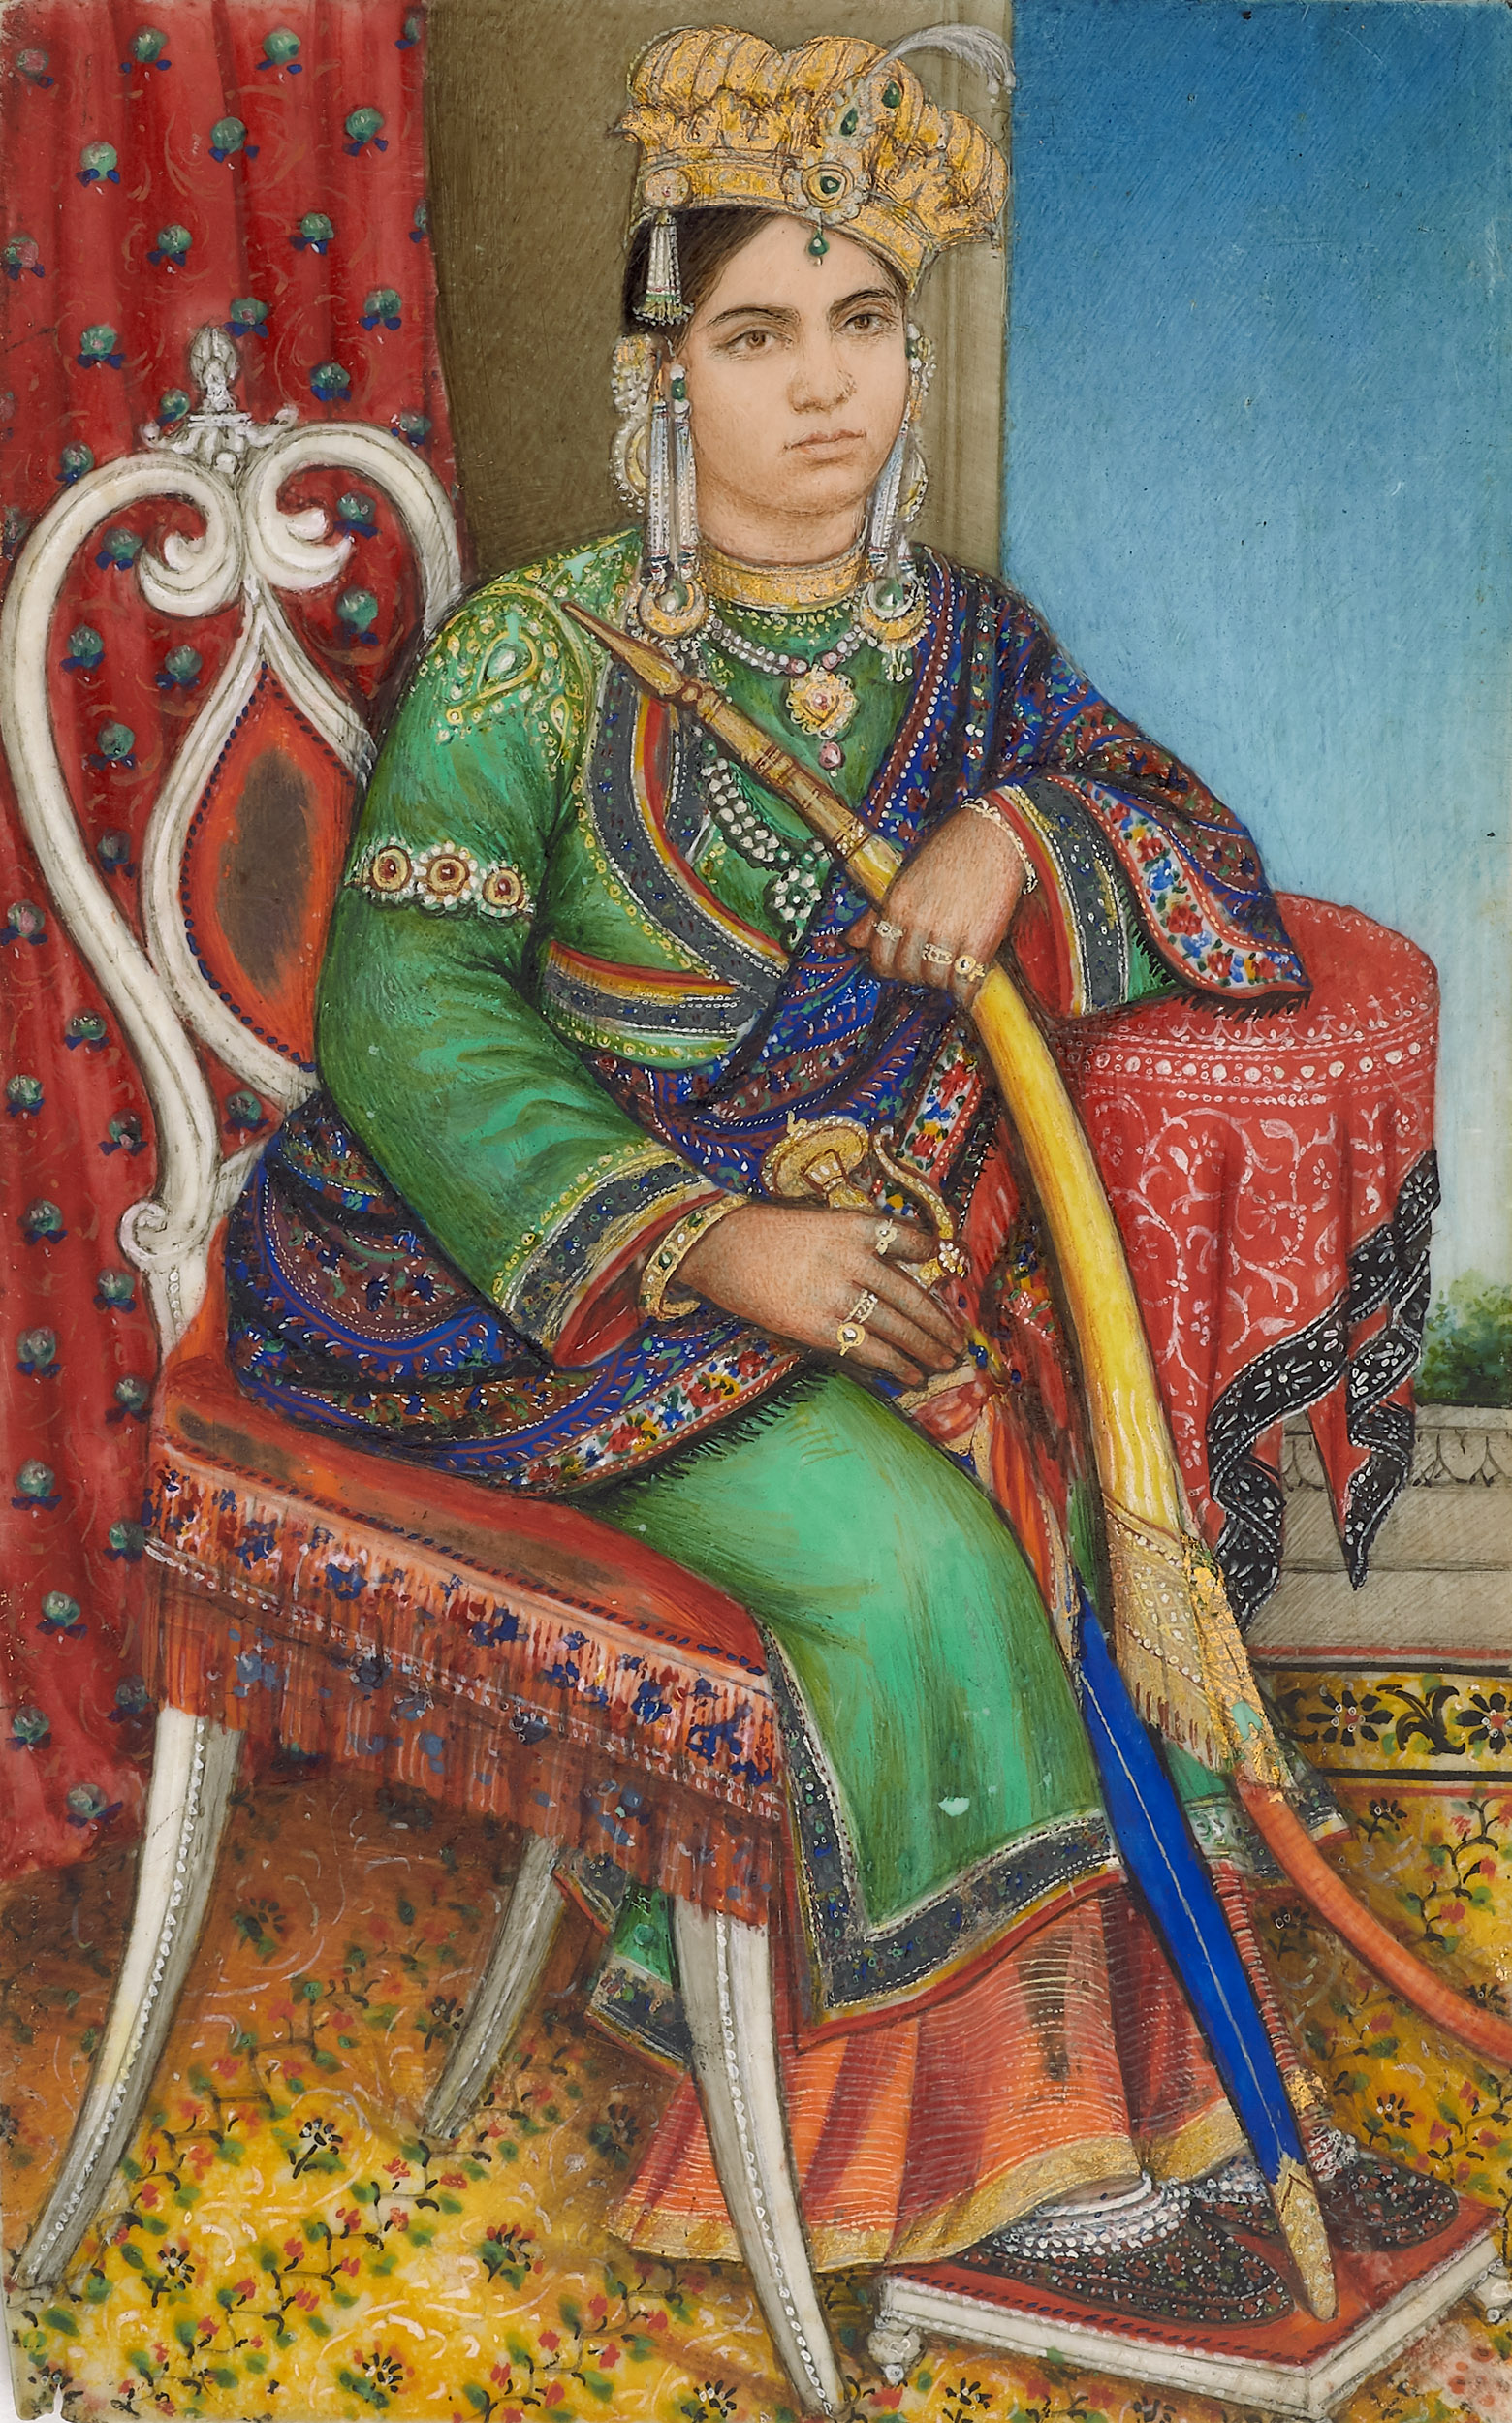 Shah Jahan Begum of Bhopal